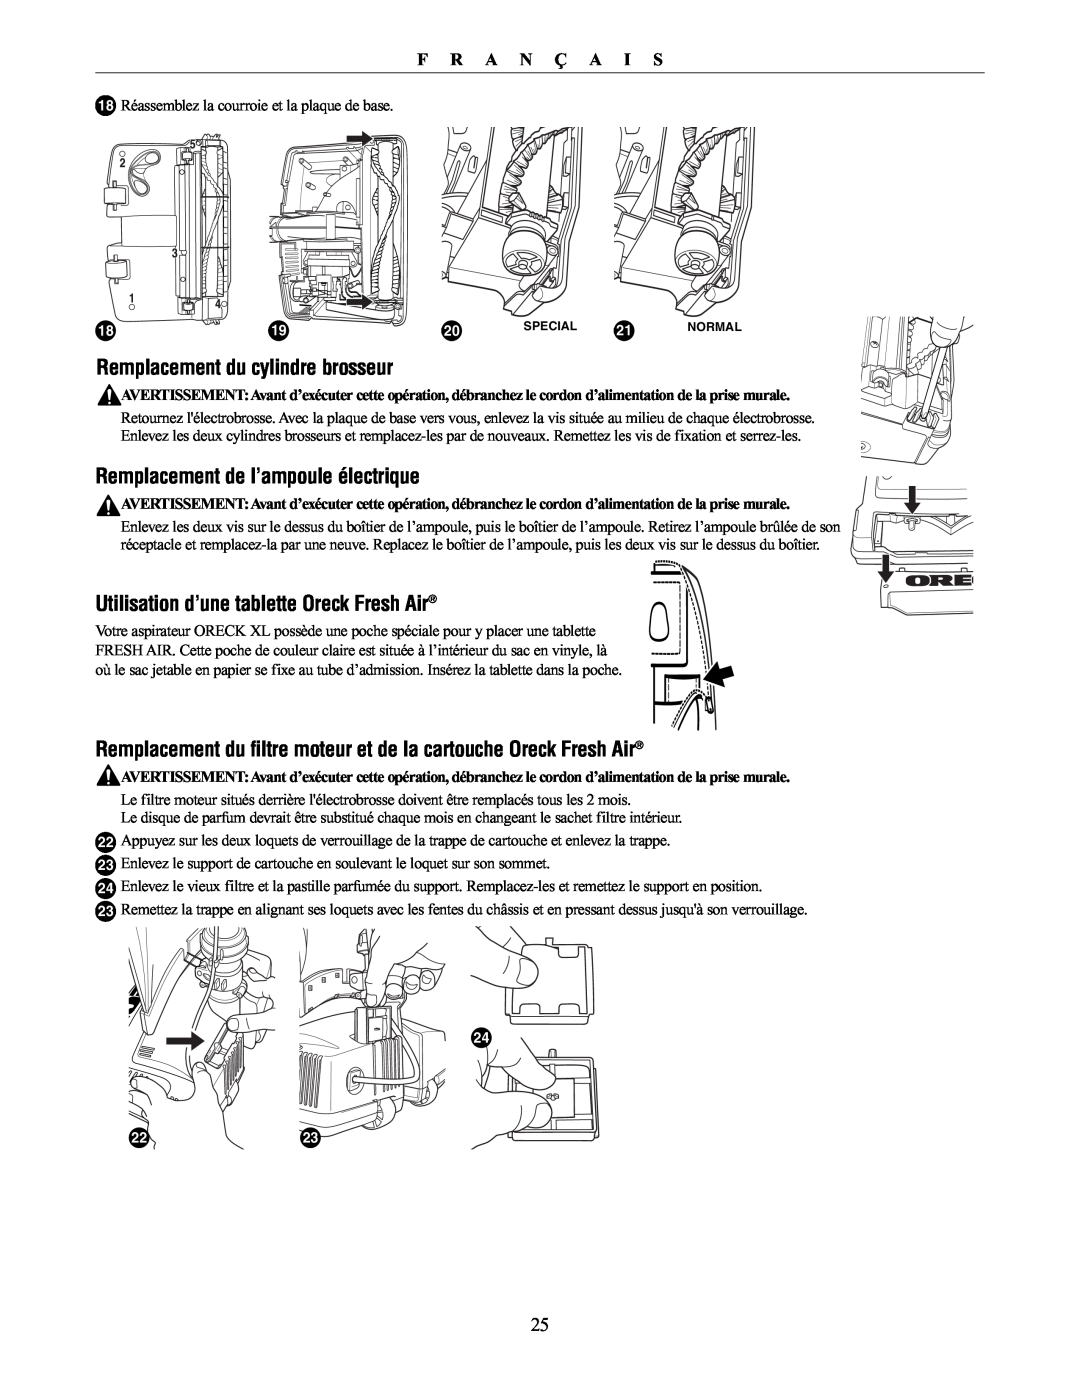 Oreck XL21 manual Remplacement du cylindre brosseur, Remplacement de l’ampoule électrique, F R A N Ç A I S 